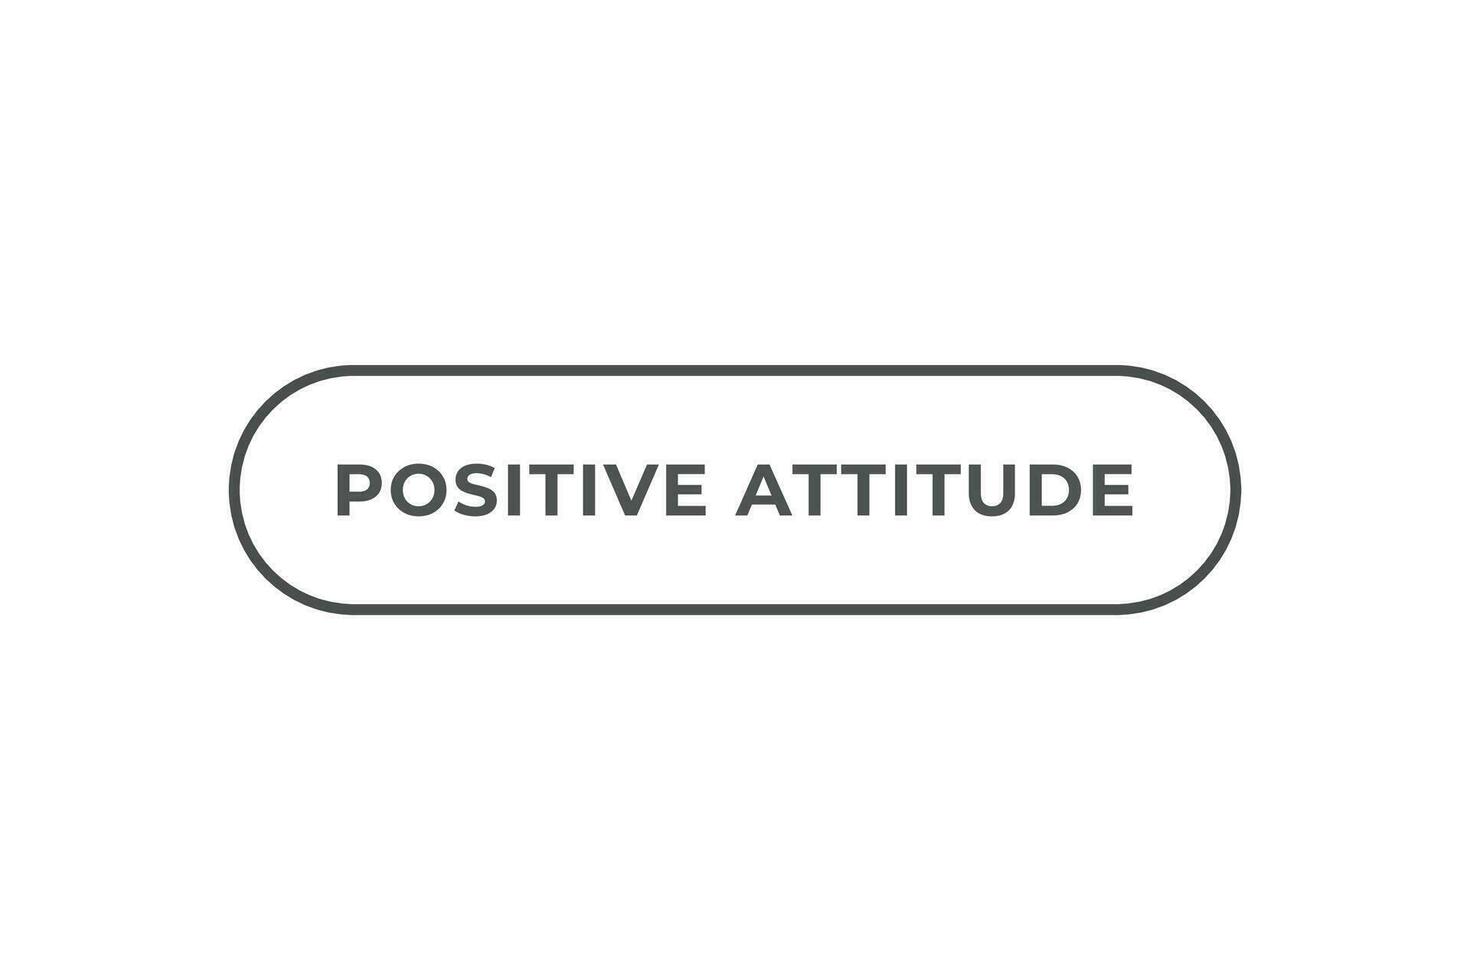 positif attitude bouton. discours bulle, bannière étiquette positif attitude vecteur